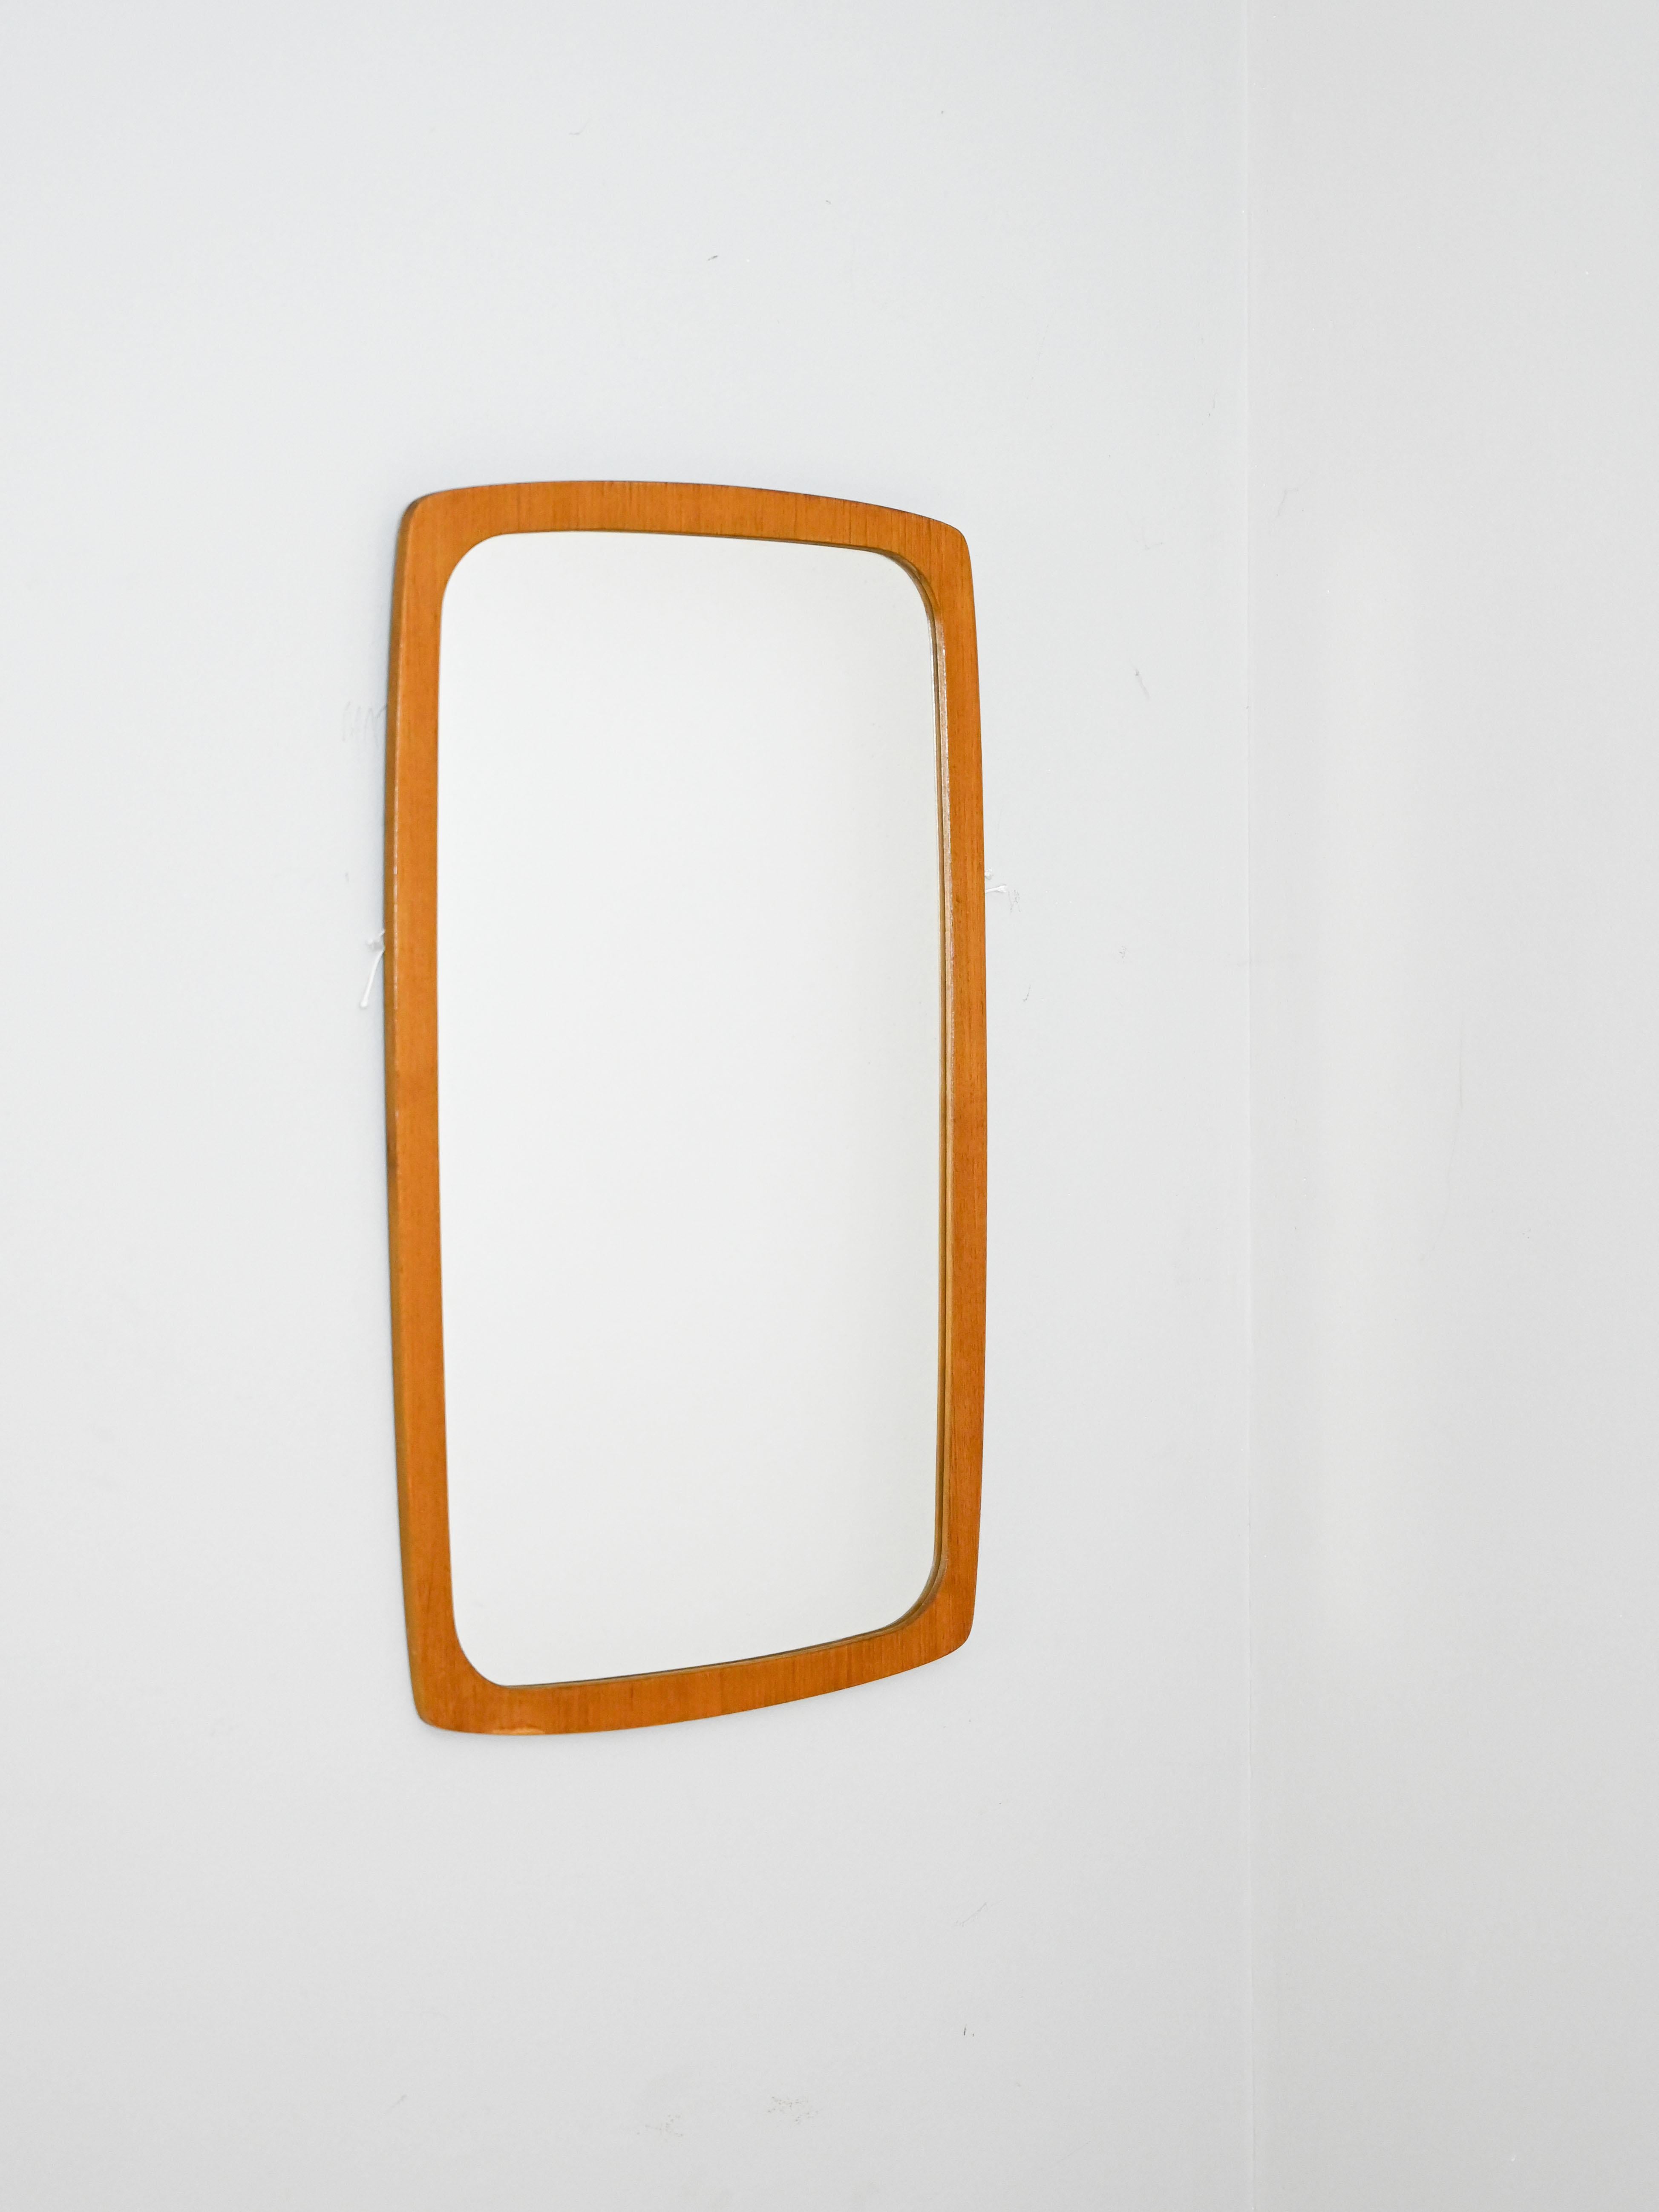 Miroir vintage suédois.

Ce miroir de forme simple et moderne se distingue par son cadre aux angles arrondis. 
Meuble polyvalent adapté à différents types d'environnements, il donnera un aspect rétro à la pièce.

Bon état. Le miroir peut présenter